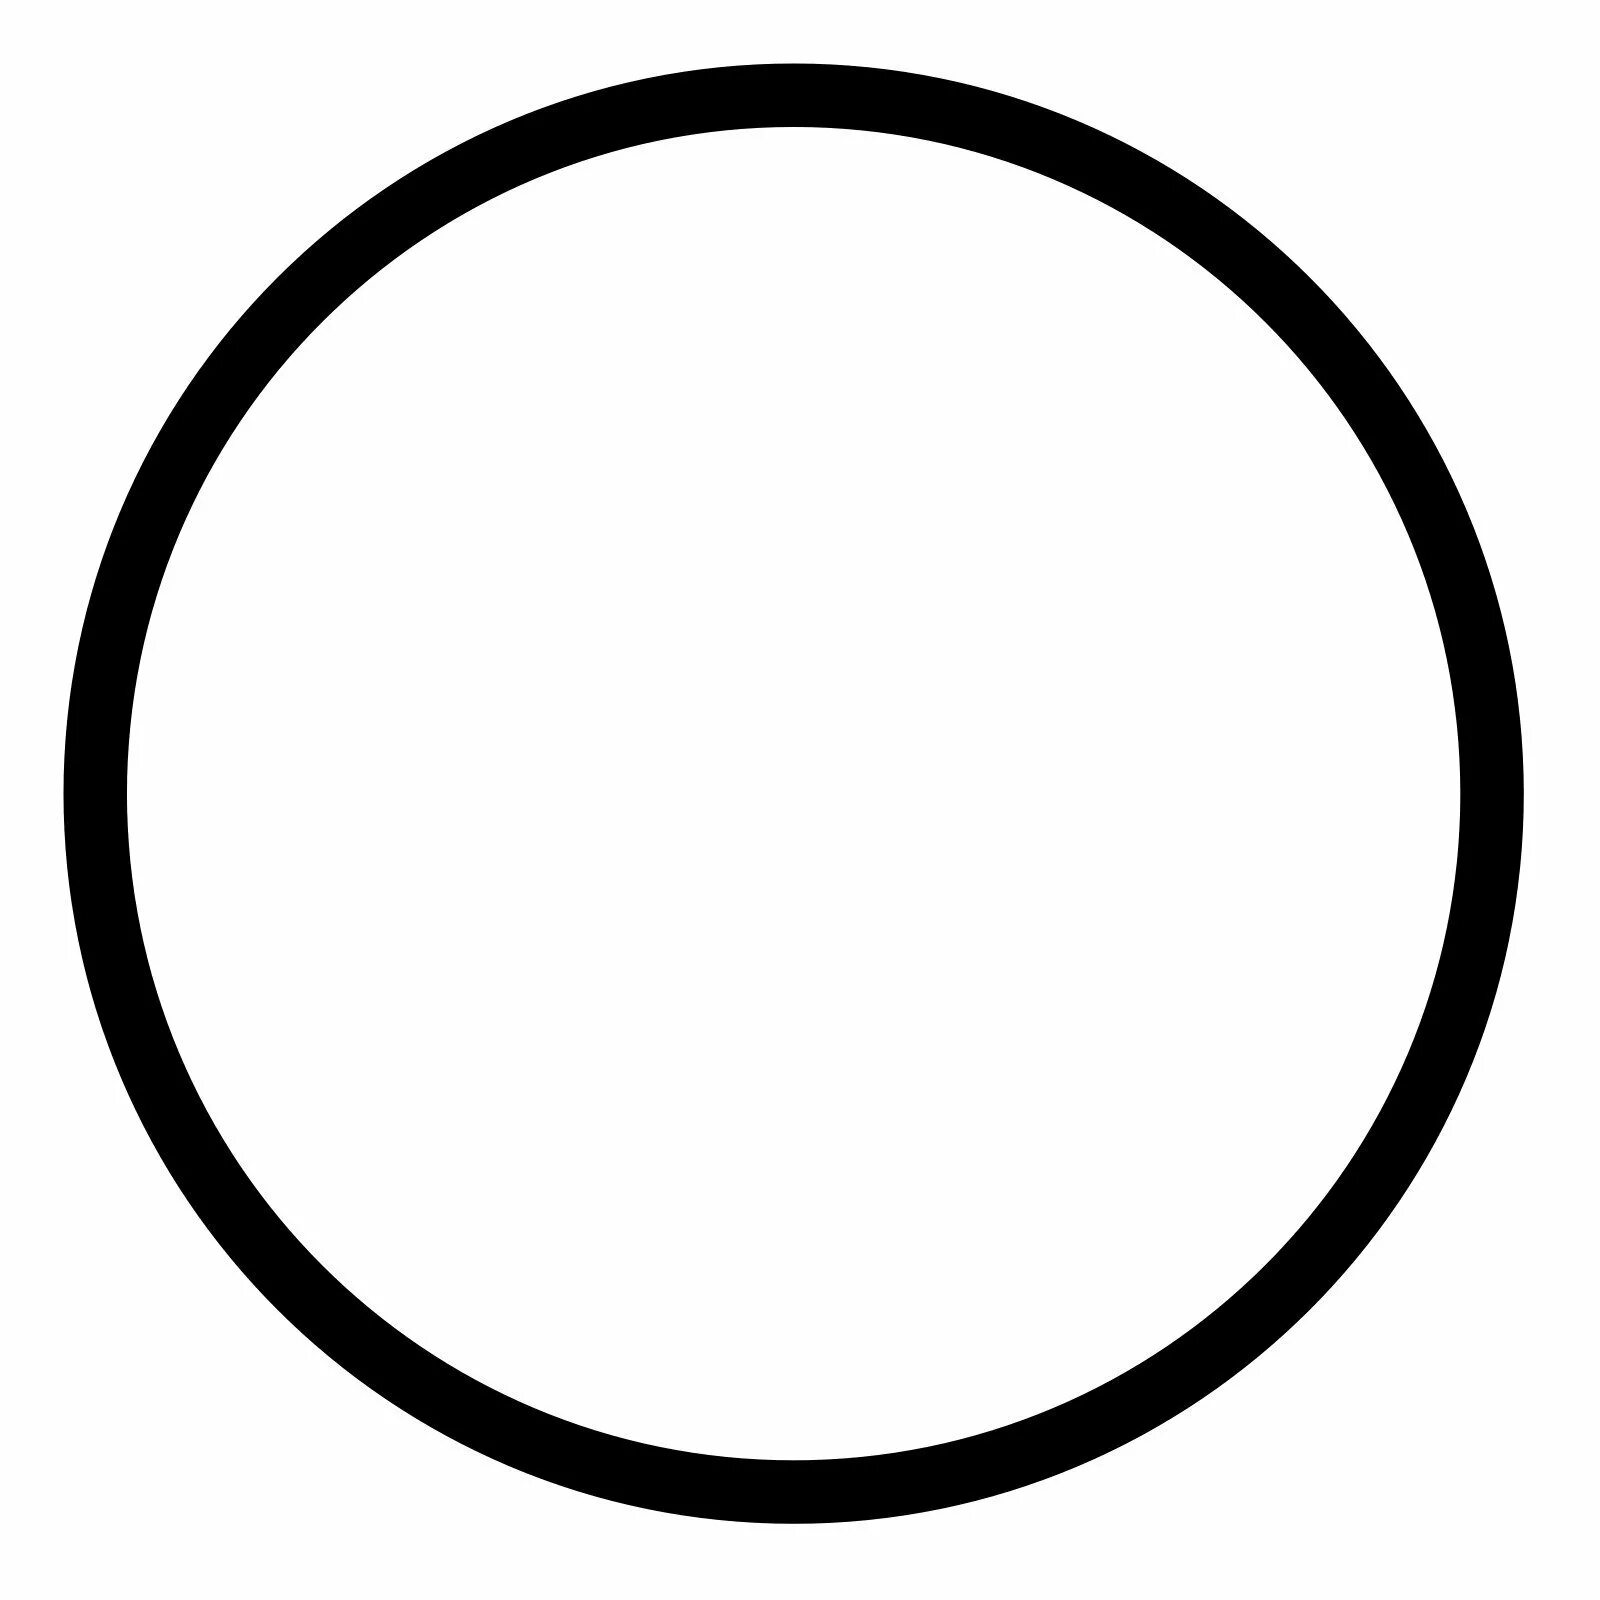 Круг на прозрачном фоне картинки для детей. Прозрачный круг. Круг трафарет для вырезания. Кружочки шаблоны для печати. Полупрозрачный круг.